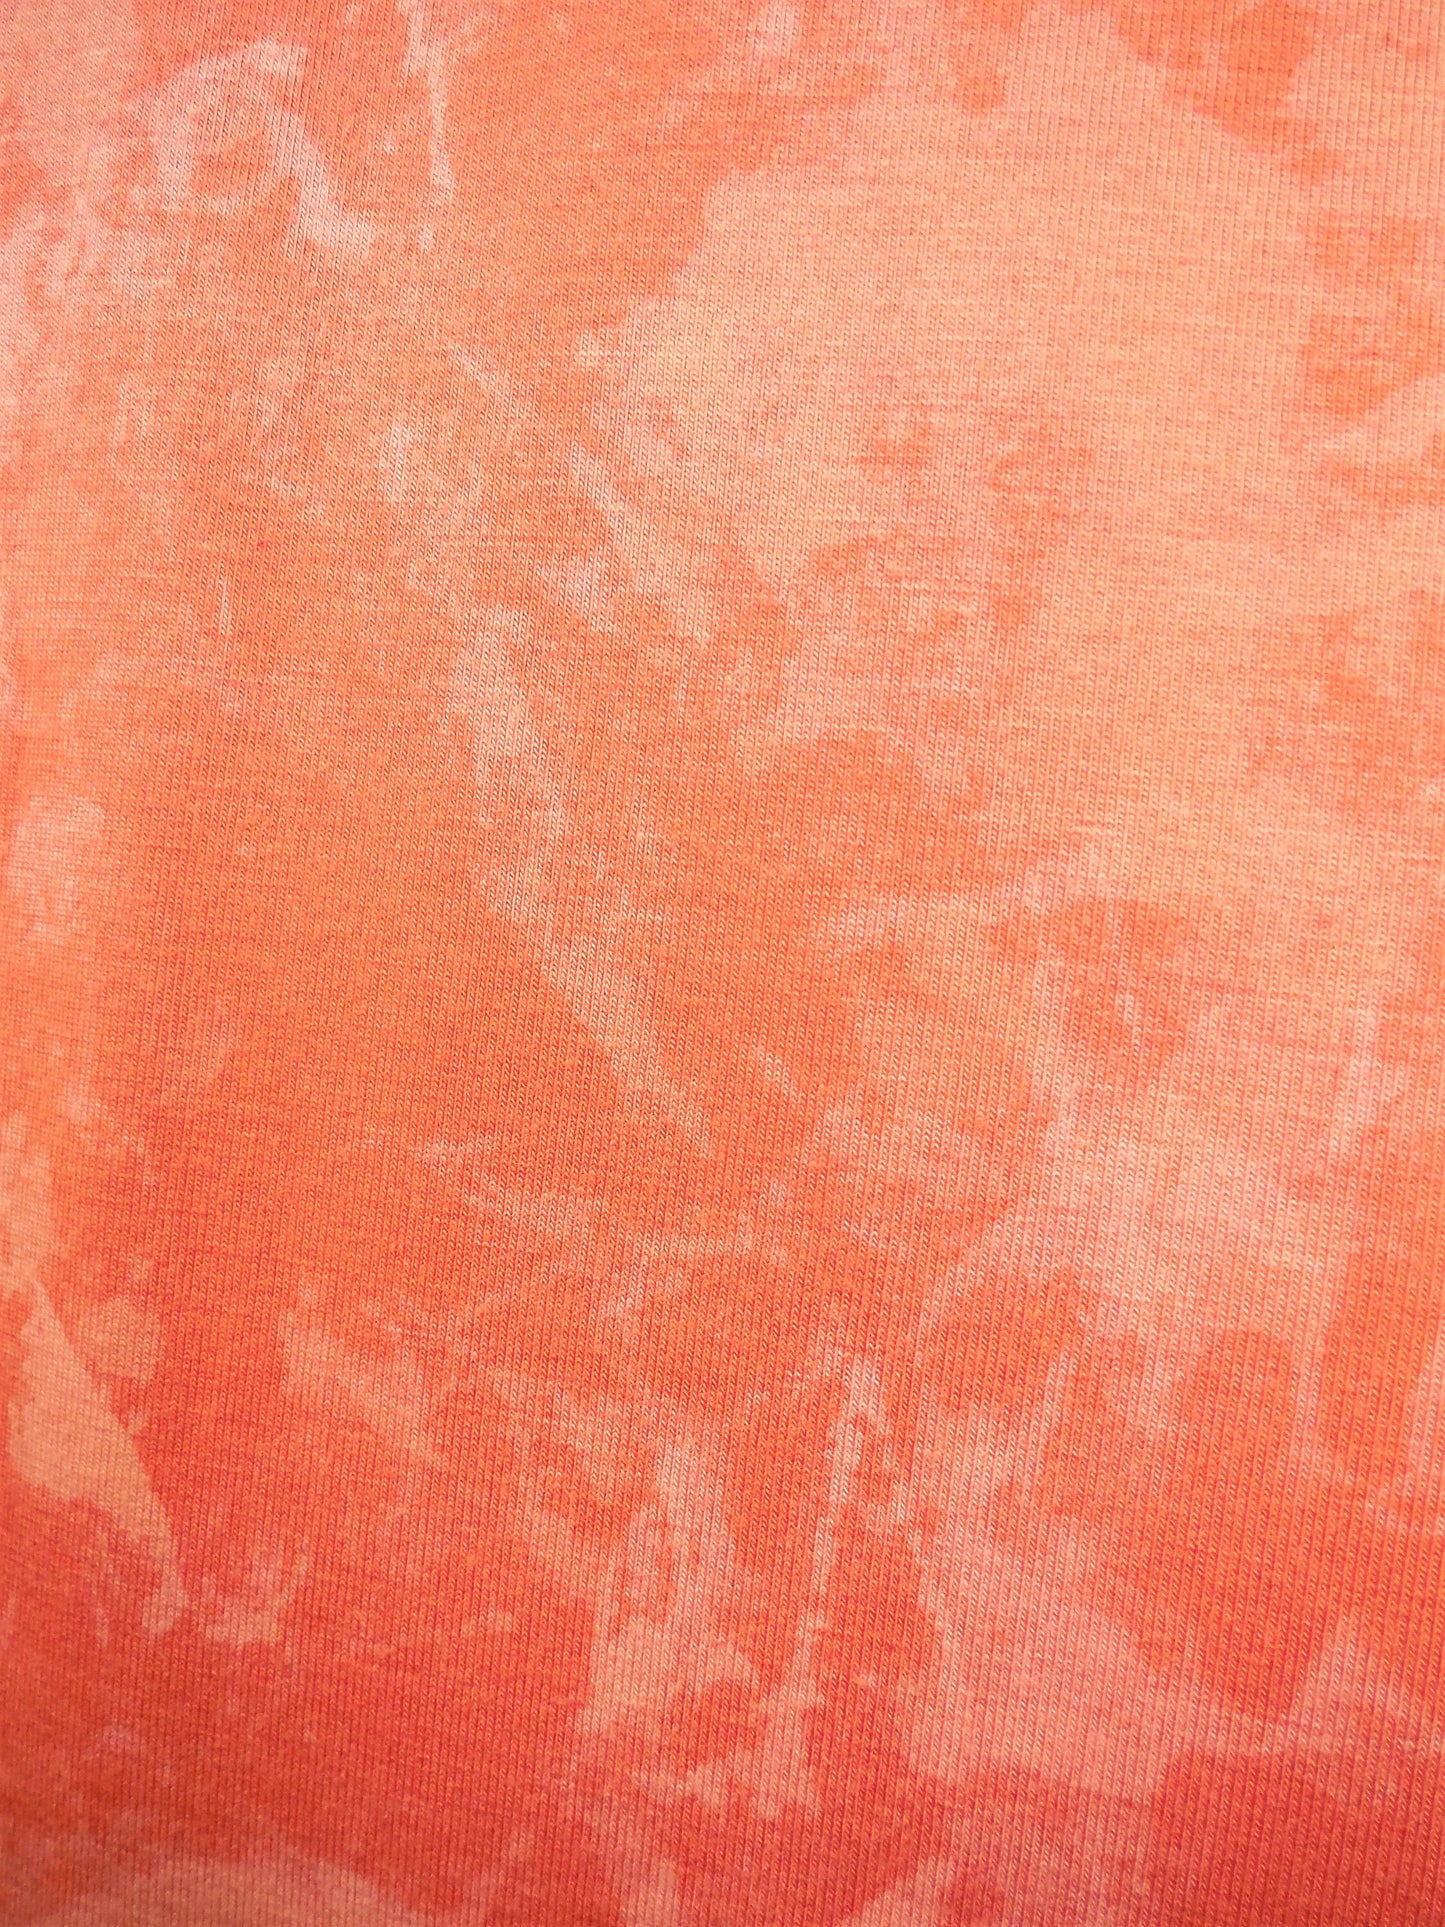 Hand Dyed Mottled Bleach Leggings - Orange